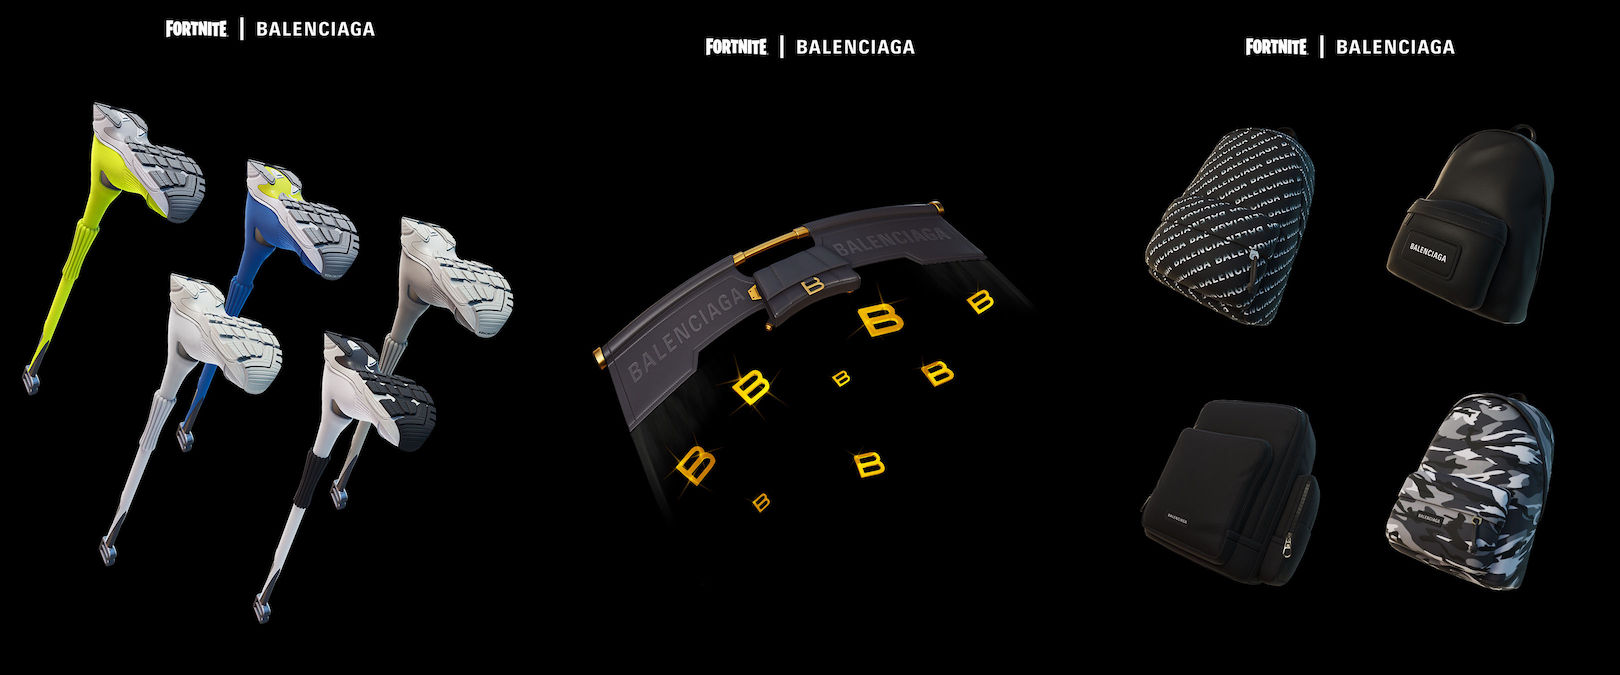 Fortnite bắt tay Balenciaga Từ thế giới ảo đến đời thực  ELLE Man